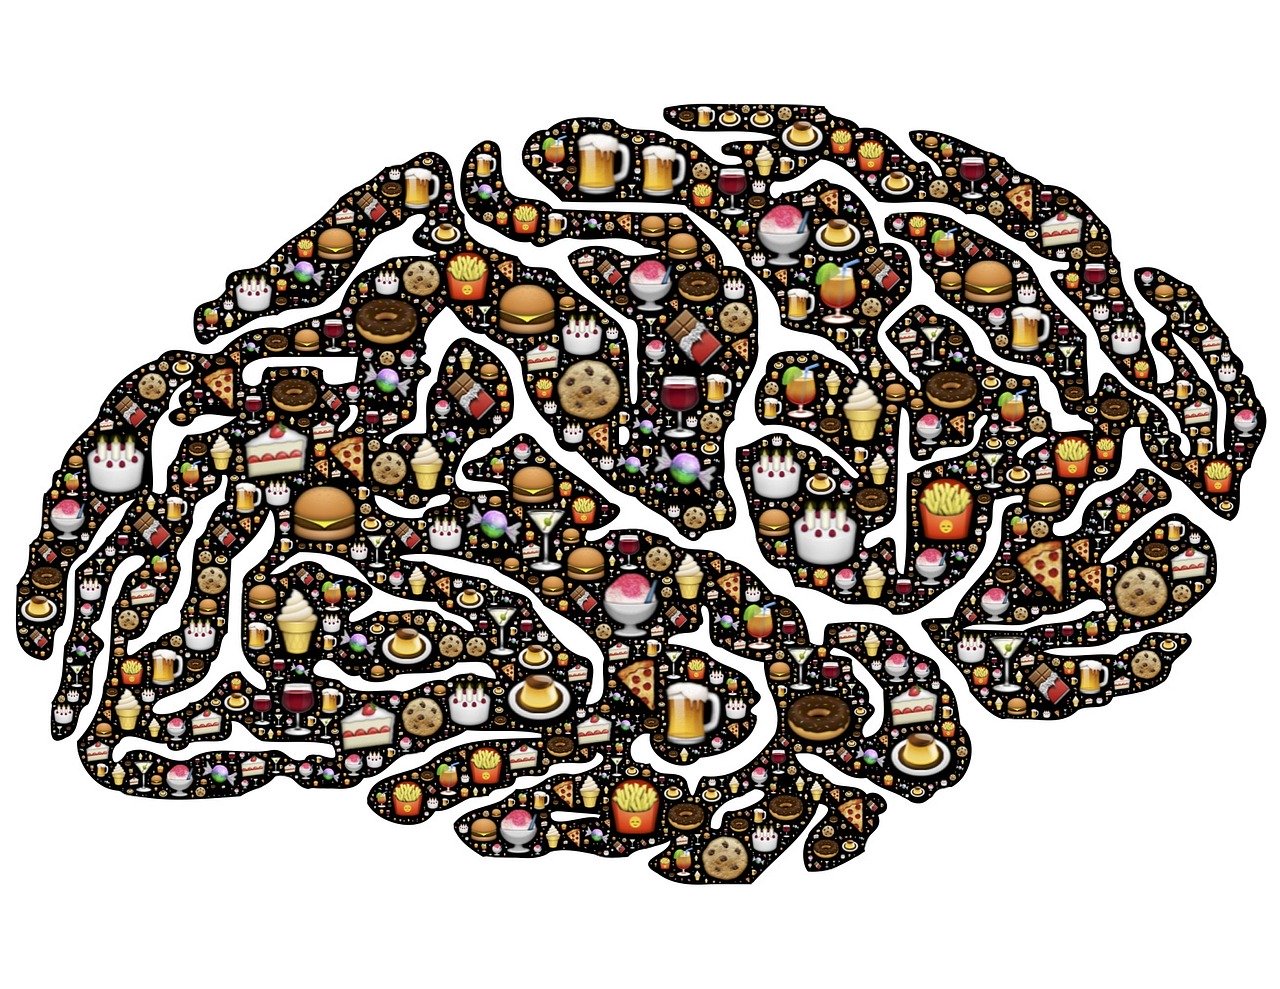 Hjernen og psykologi spiller en stor rolle innen markedsføring.